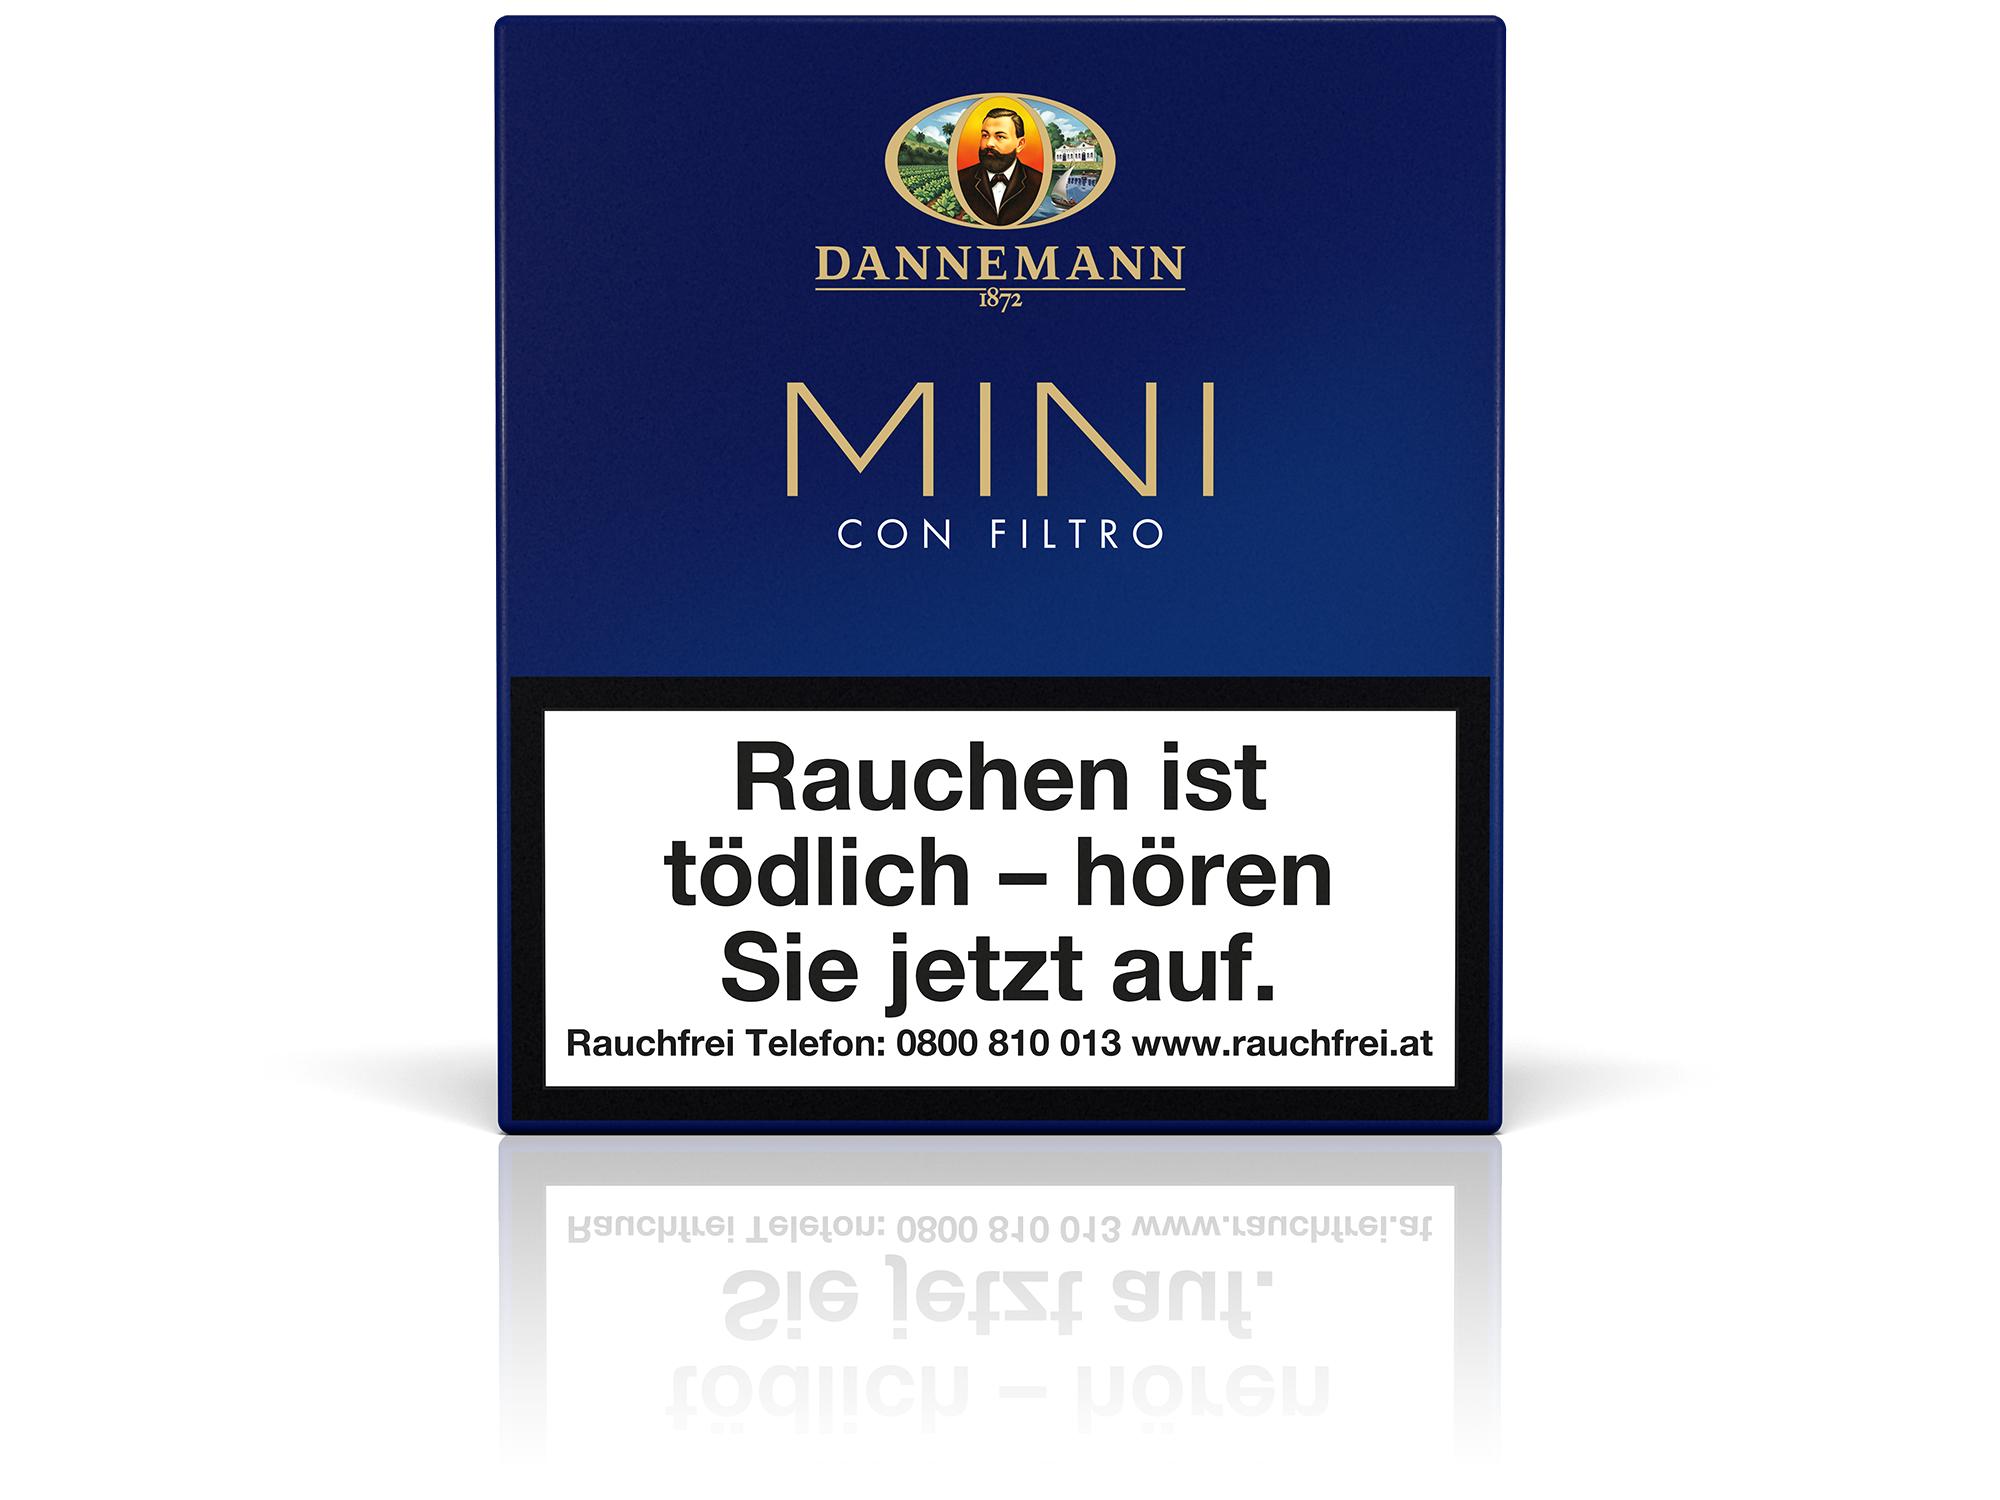 Dannemann Mini Con Filtro 1 x 20 Zigarillos